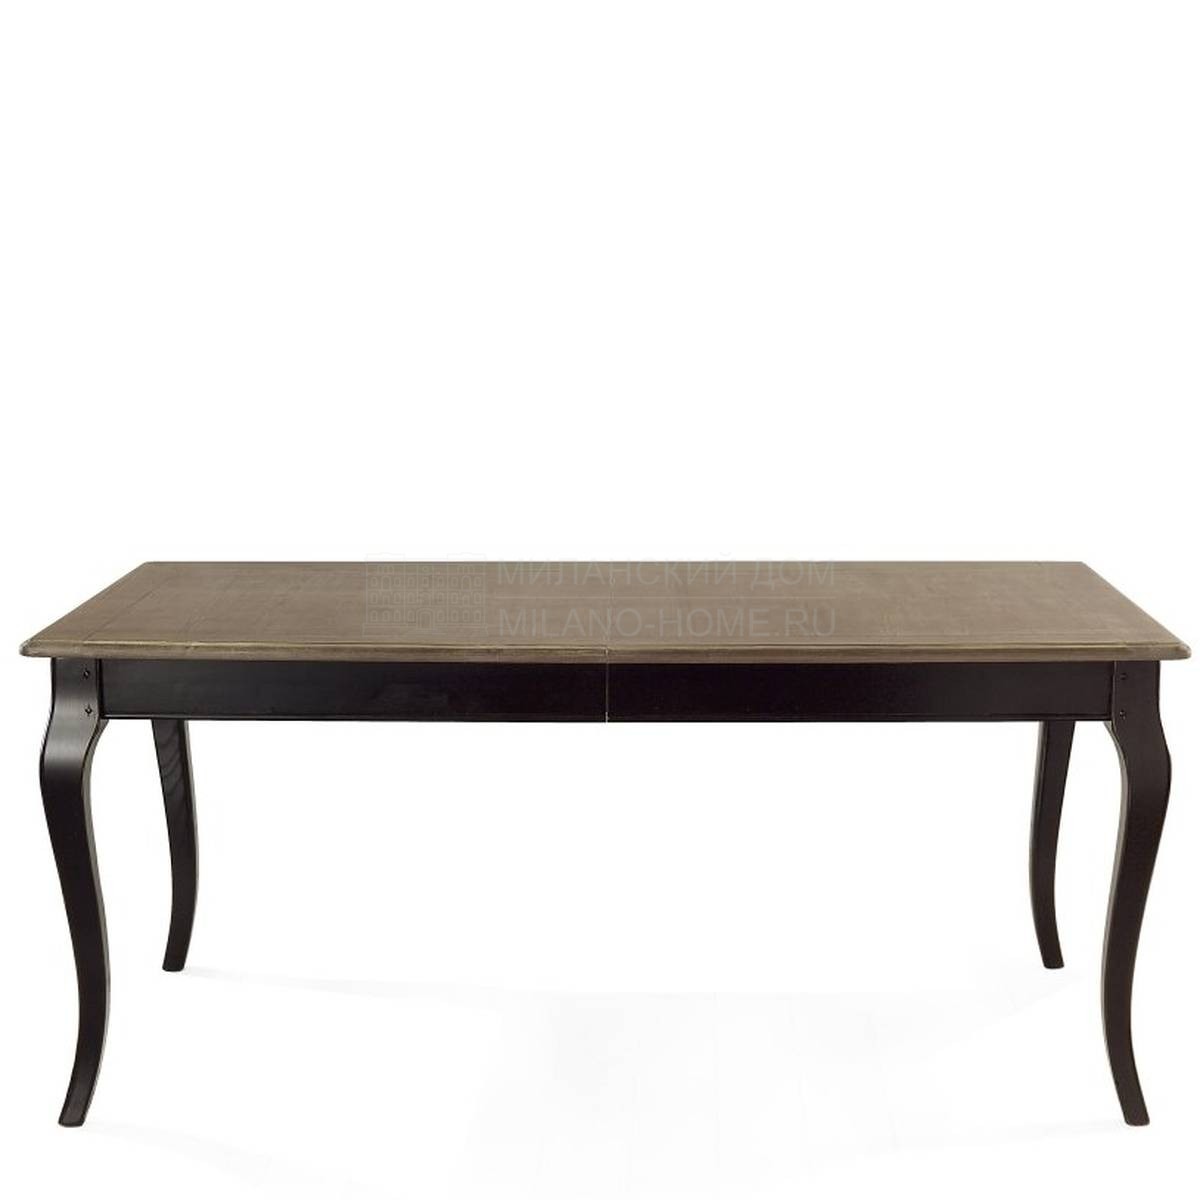 Обеденный стол Eagle rectangular dining table extendable из Италии фабрики MARIONI